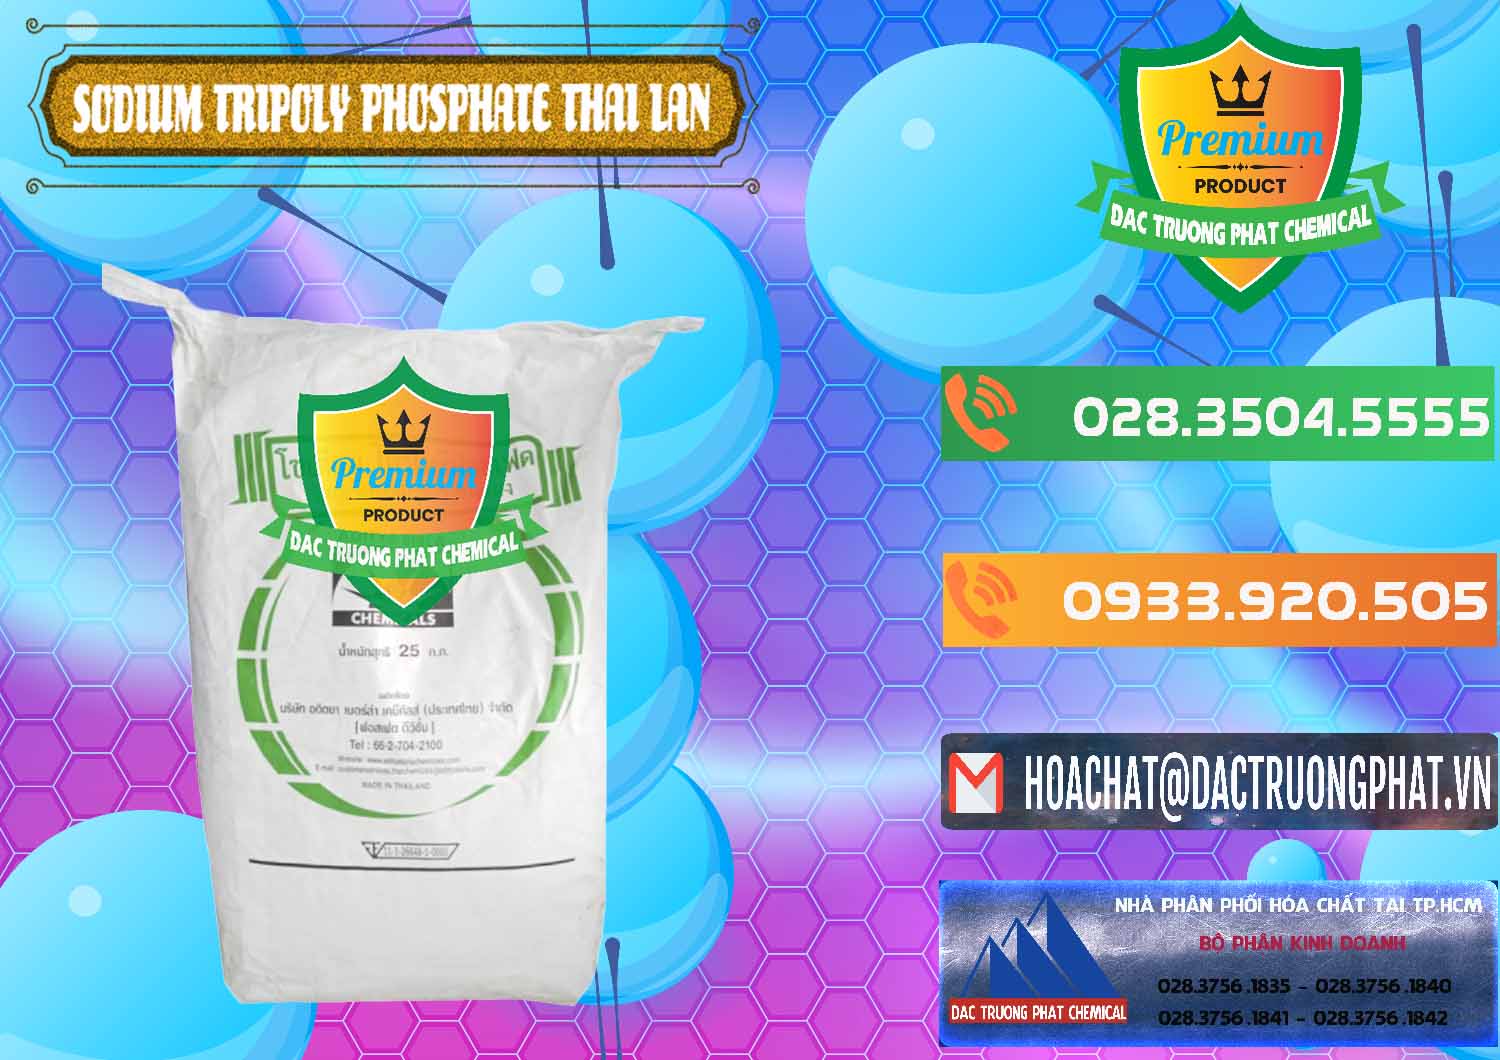 Công ty chuyên bán & cung ứng Sodium Tripoly Phosphate - STPP Aditya Birla Grasim Thái Lan Thailand - 0421 - Công ty chuyên kinh doanh & phân phối hóa chất tại TP.HCM - hoachatxulynuoc.com.vn